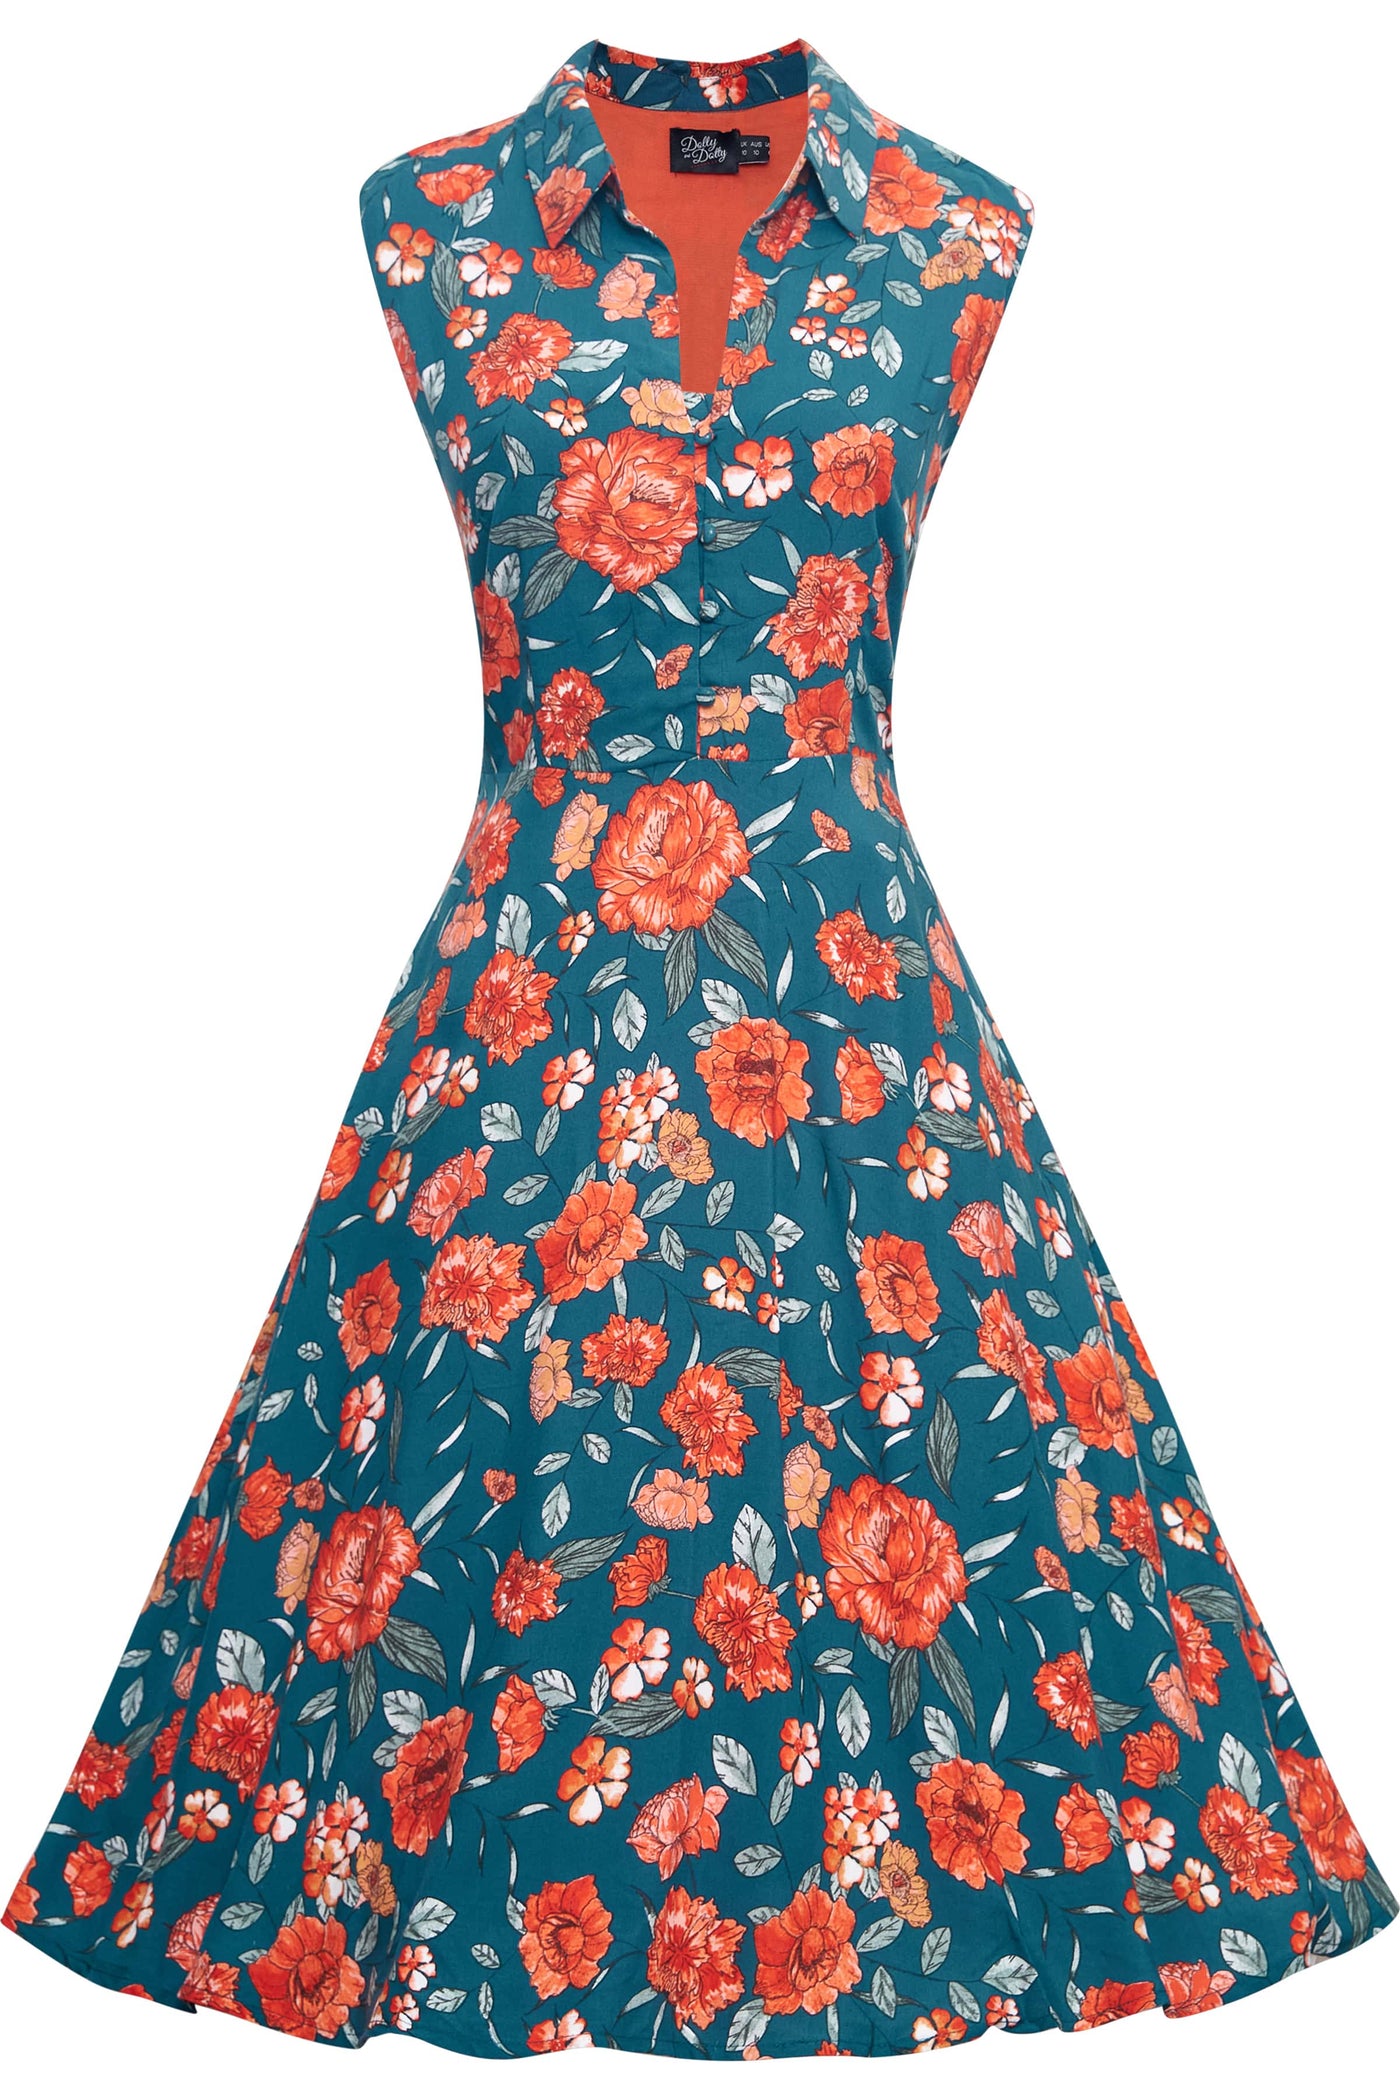 Blue & Orange Floral Collar Dress